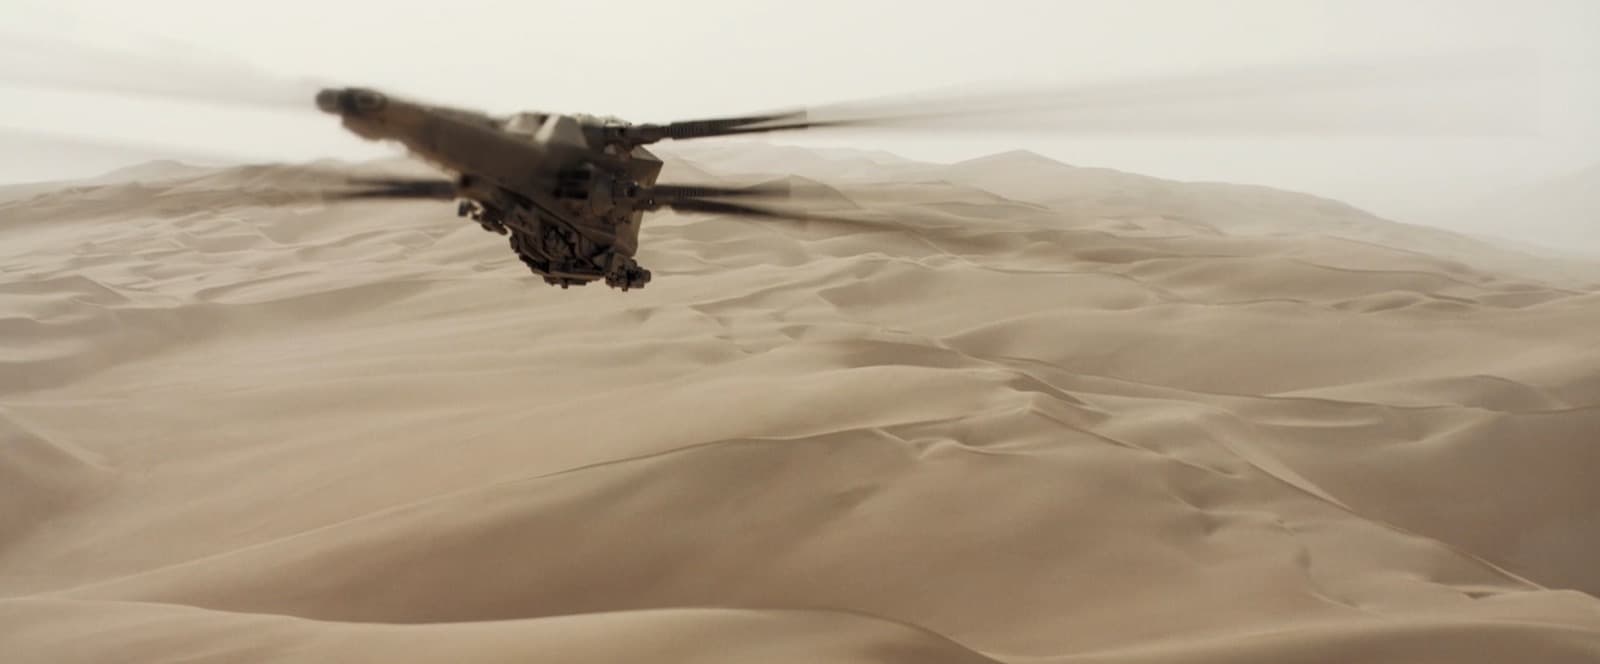 Летательный аппарат, напоминающий стрекозу летит над бескрайними просторами пустыни